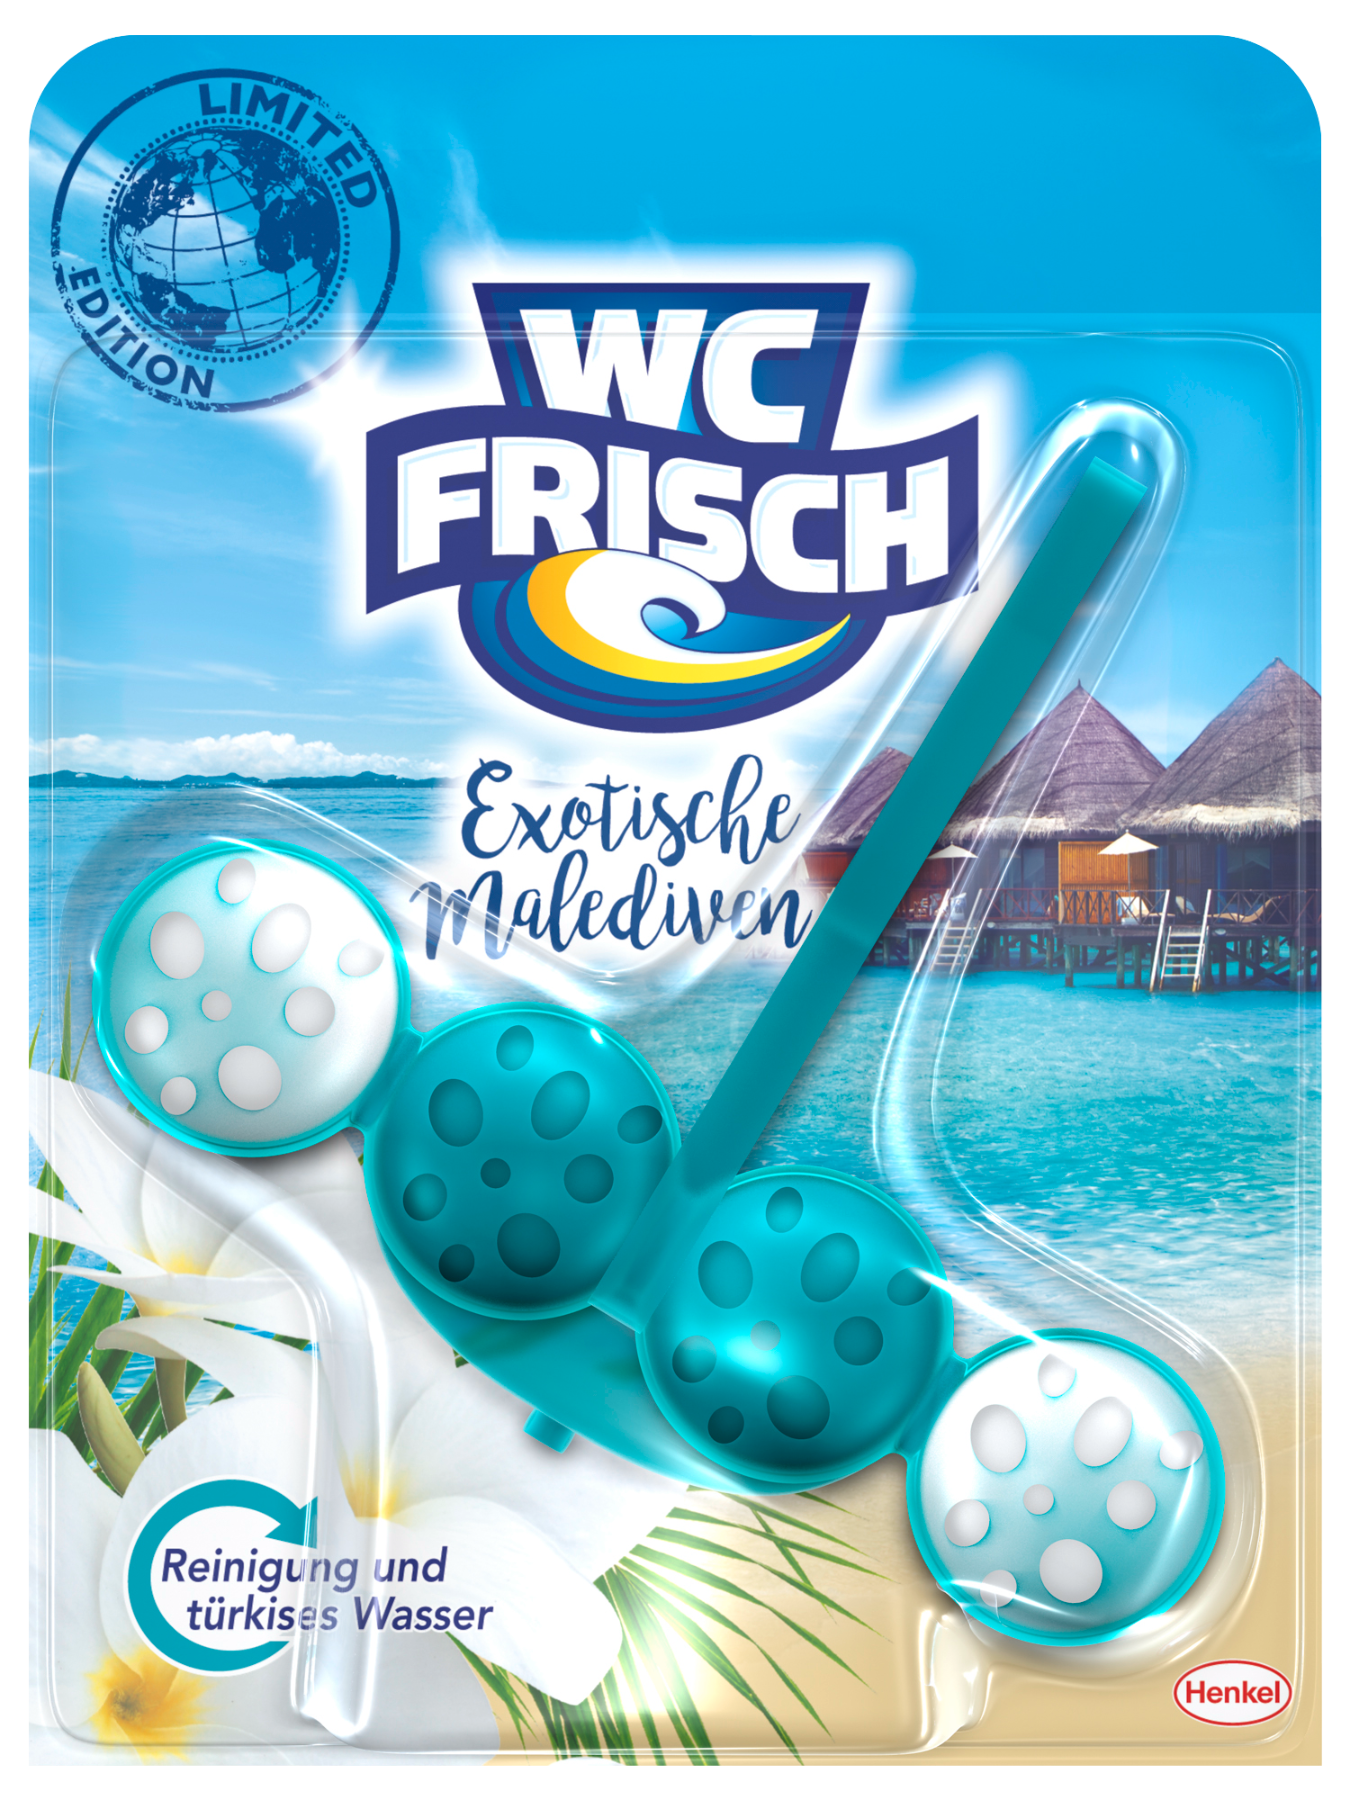 Die neue WC Frisch Limited Edition mit der Version Exotische Malediven